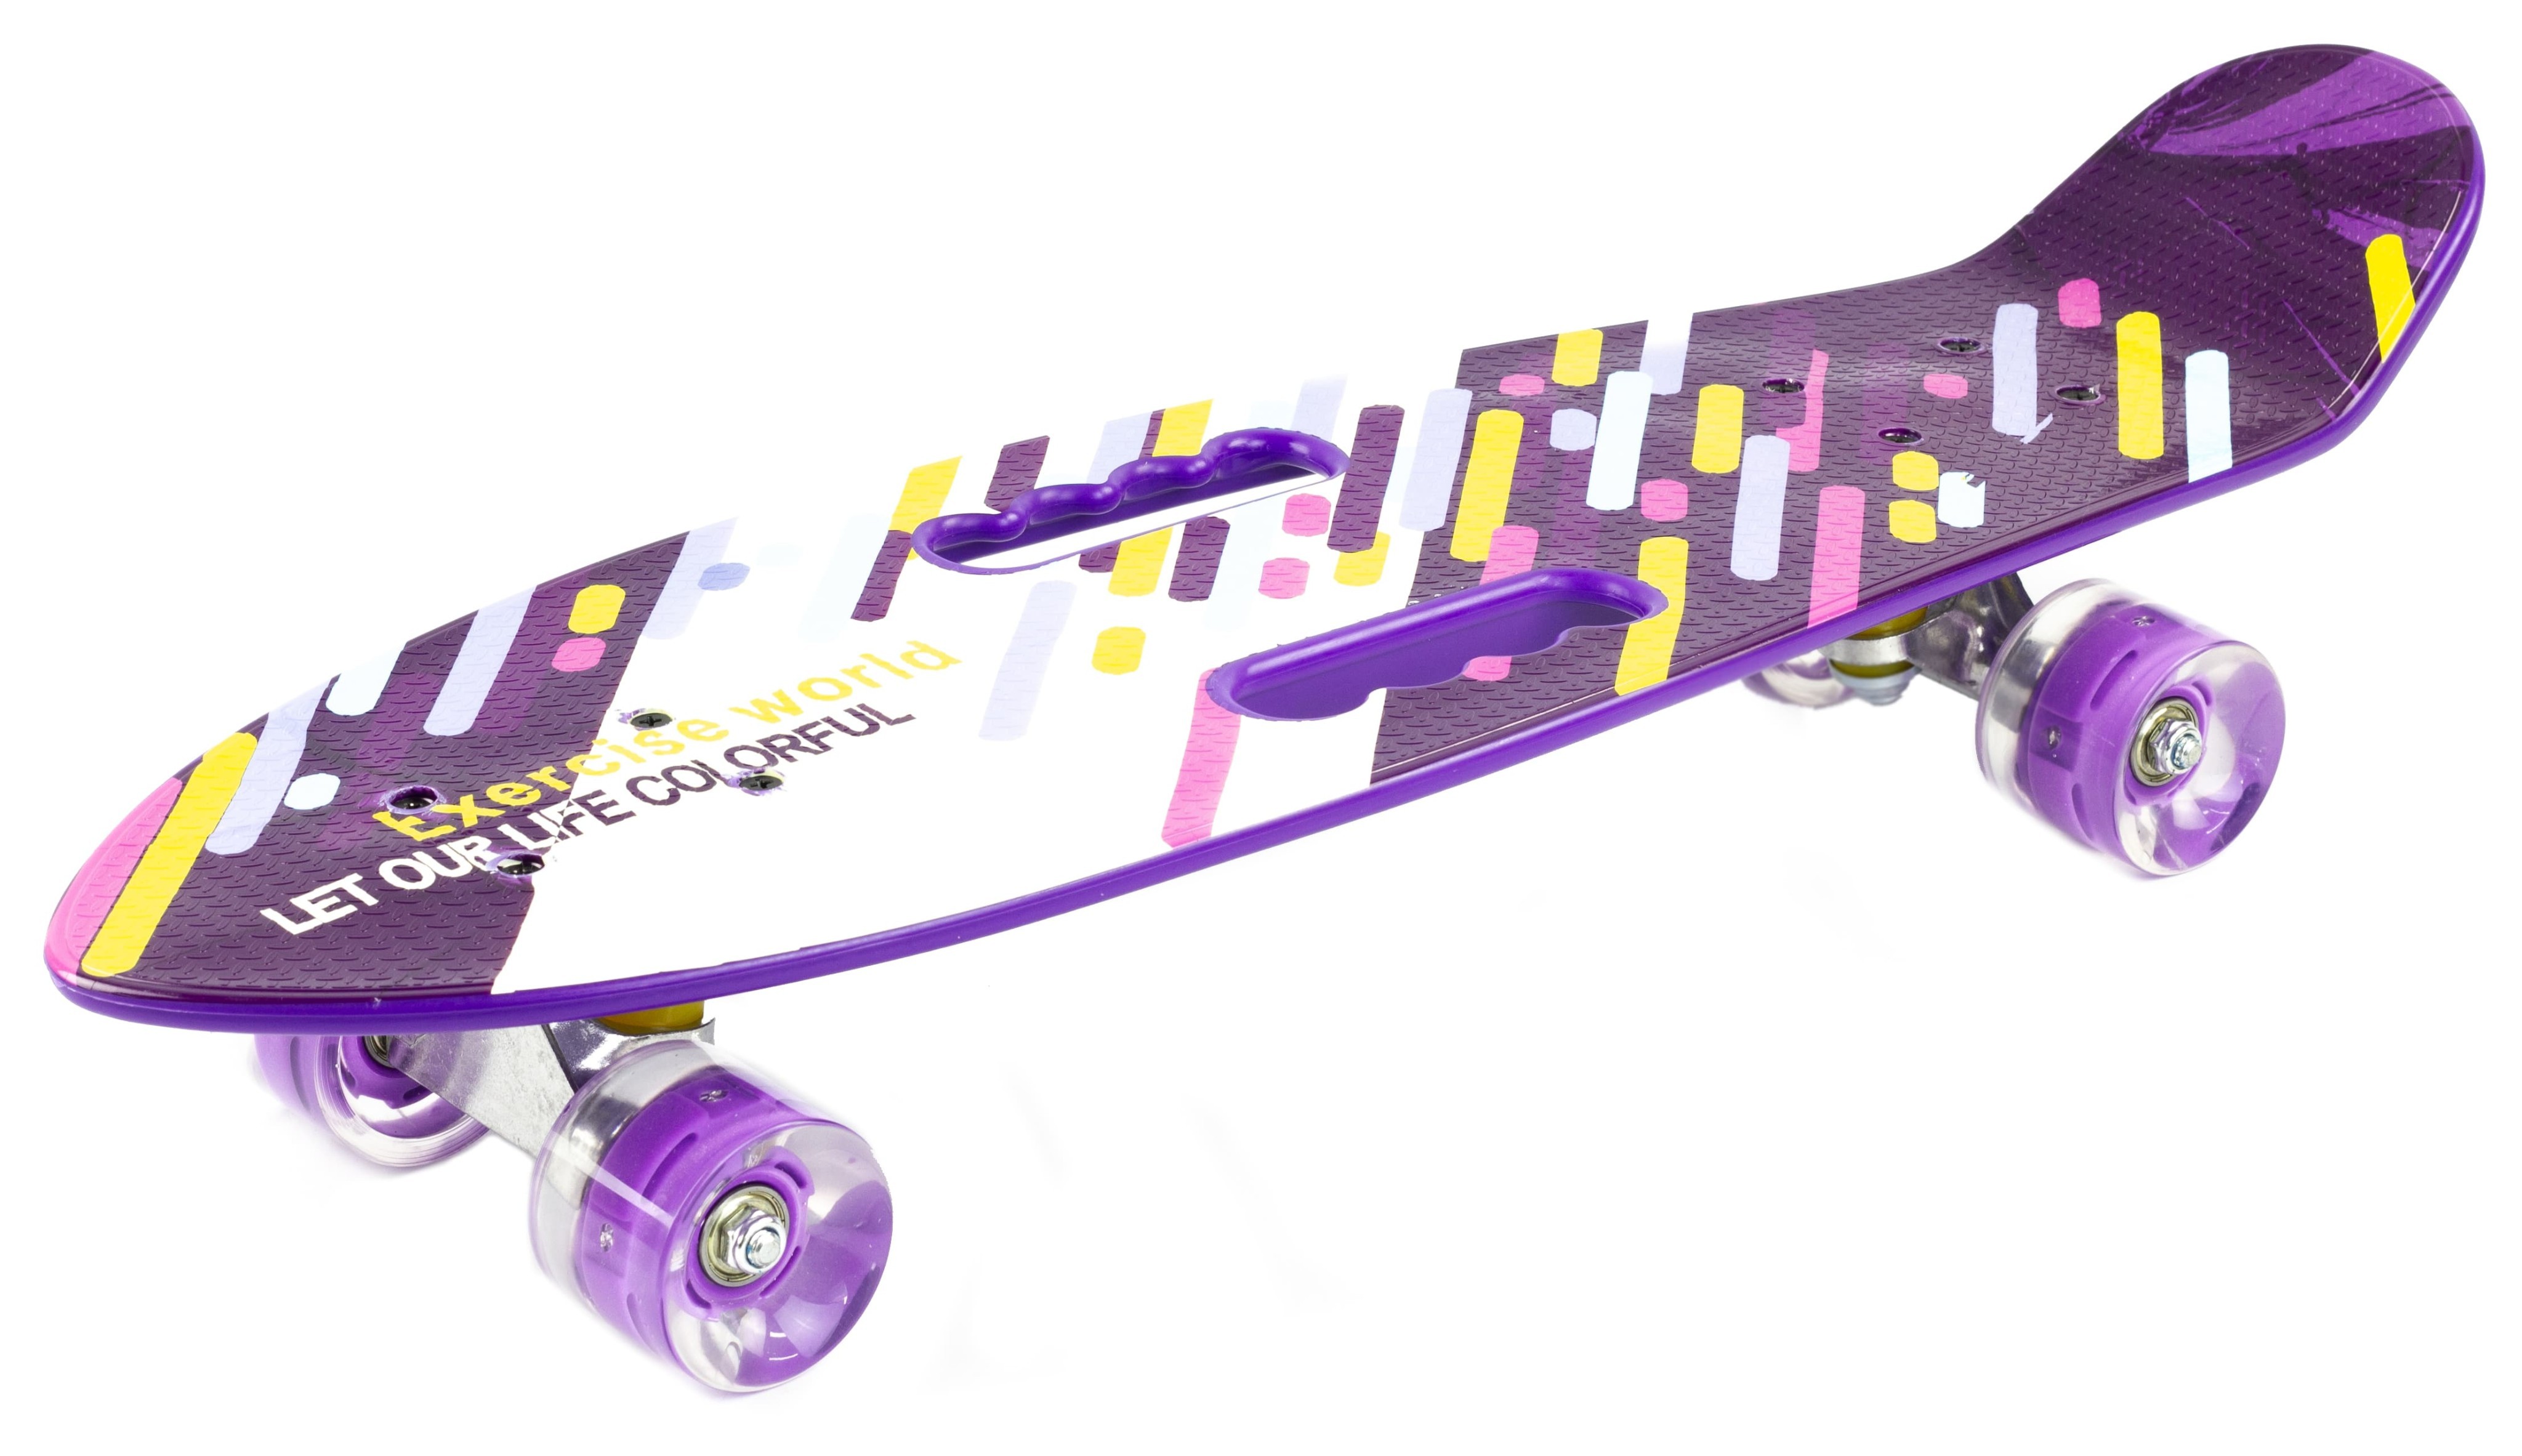 Пенни Борд со светящимися колесами и ручками для переноски, 68 см. S00404 / Фиолетовый